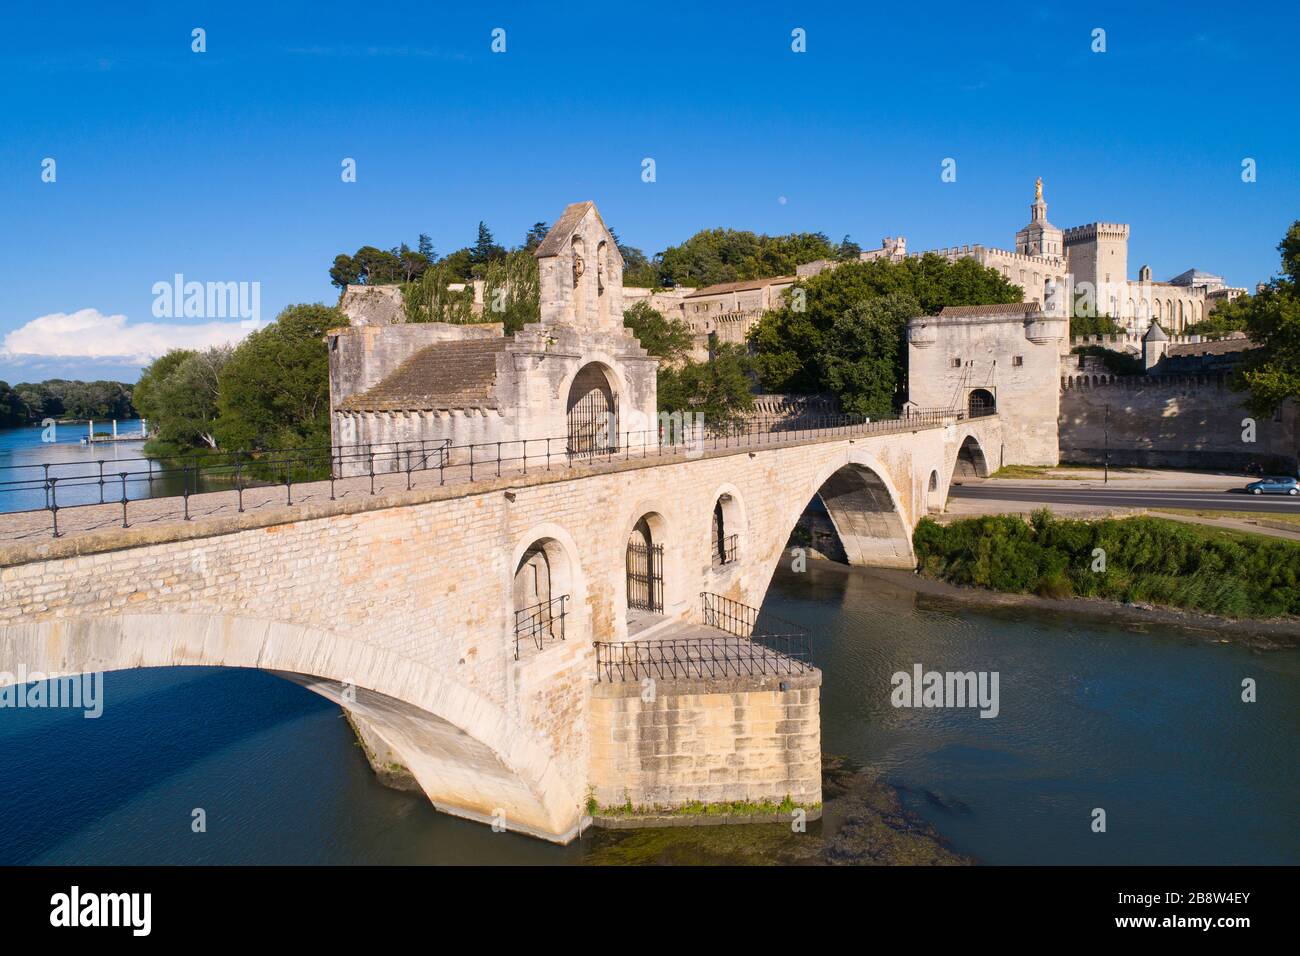 Luftaufnahme des Papstpalastes von Avignon (Palais des Papes) und der Brücke von Avignon (Pont d'Avignon oder Pont St-Bénézet), die von UNE als Weltkulturerbe aufgeführt ist Stockfoto